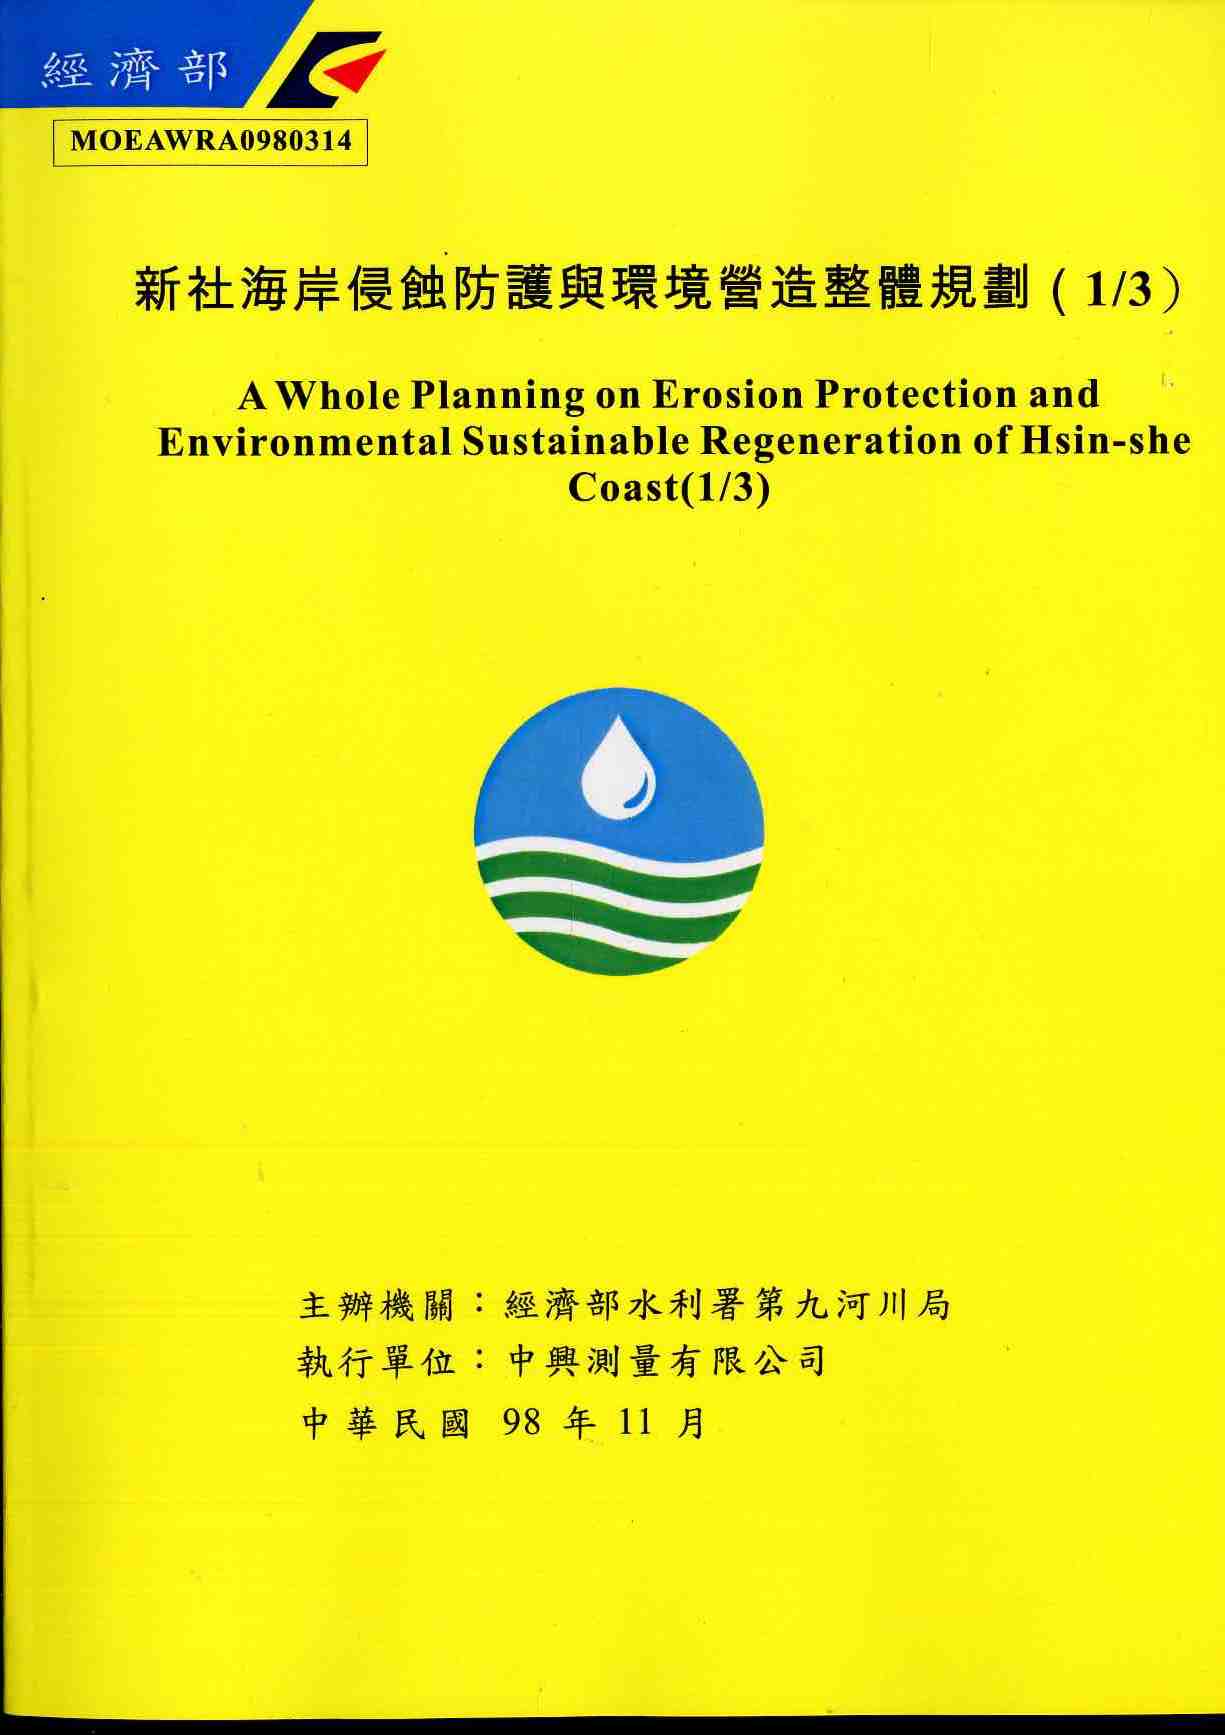 新社海岸侵蝕防護與環境營造整體規劃(1/3)